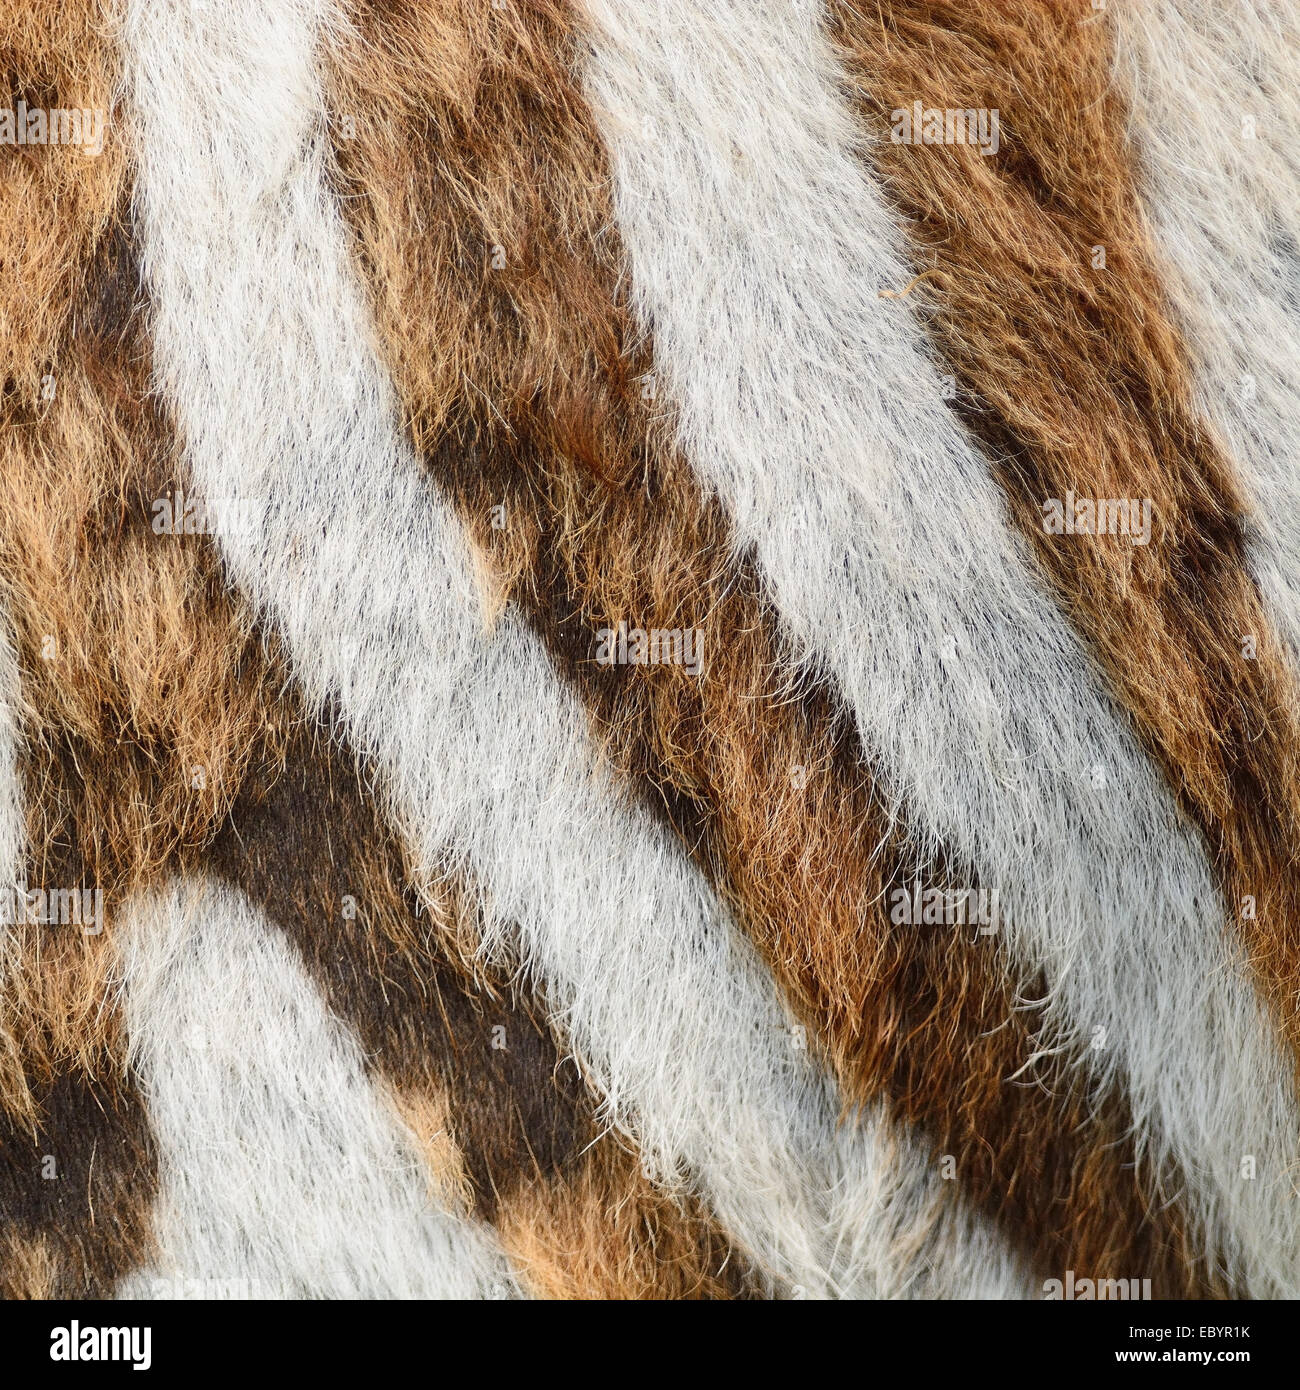 Pelle di animale, comune o Zebra Burchell's Zebra (Equus burchelli) pelle, striped texture di sfondo Foto Stock